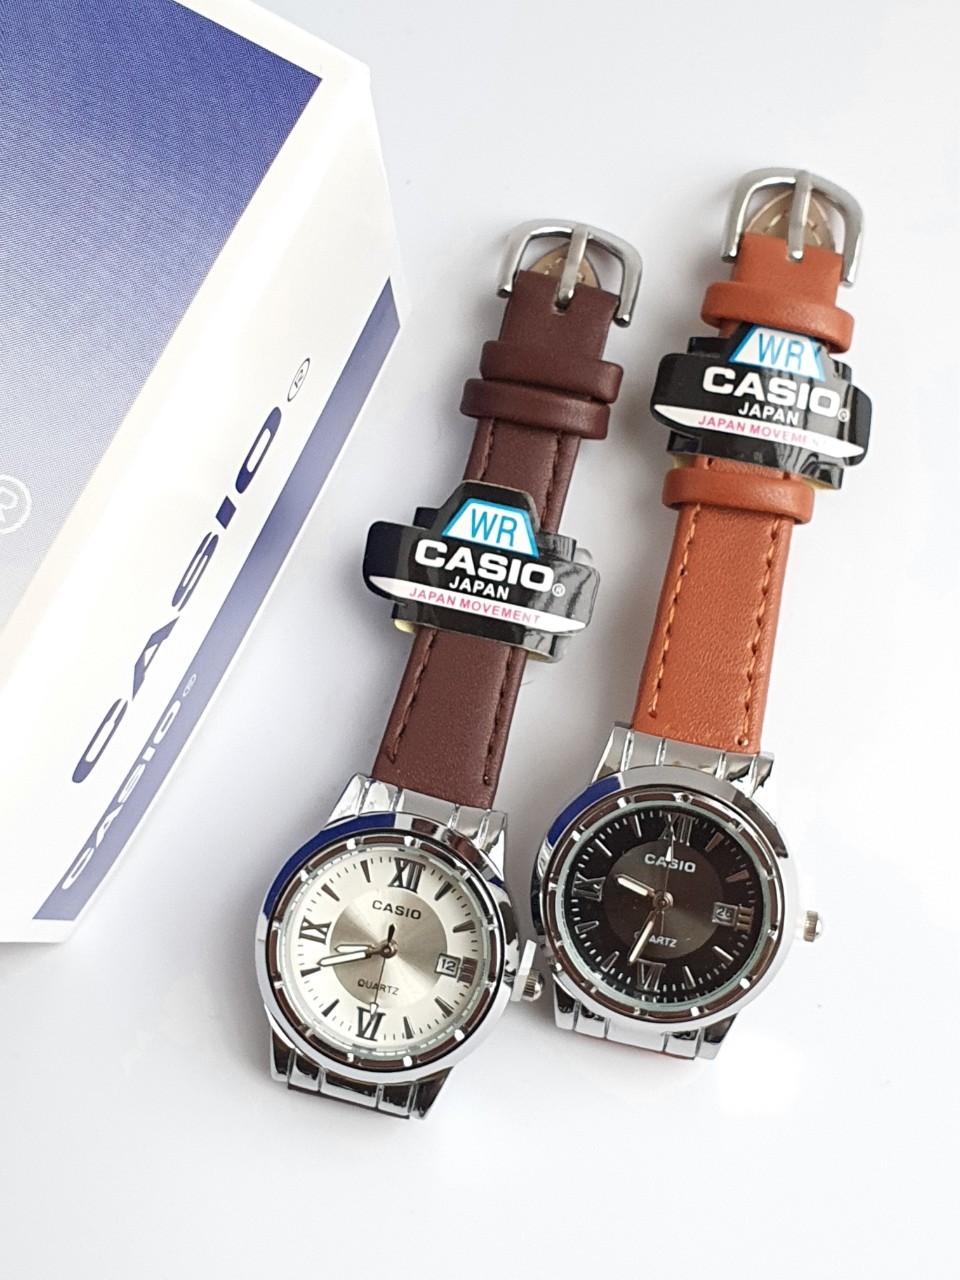 เกี่ยวกับสินค้า (กันน้ำ) นาฬิกาแฟชั่น นาฬิกาข้อมือผู้หญิง สายหนัง **CAS1O พร้อมกล่องคู่มือ** คาสิโอ้สายหนัง นาฬิกาแบรนเนม RC616/2